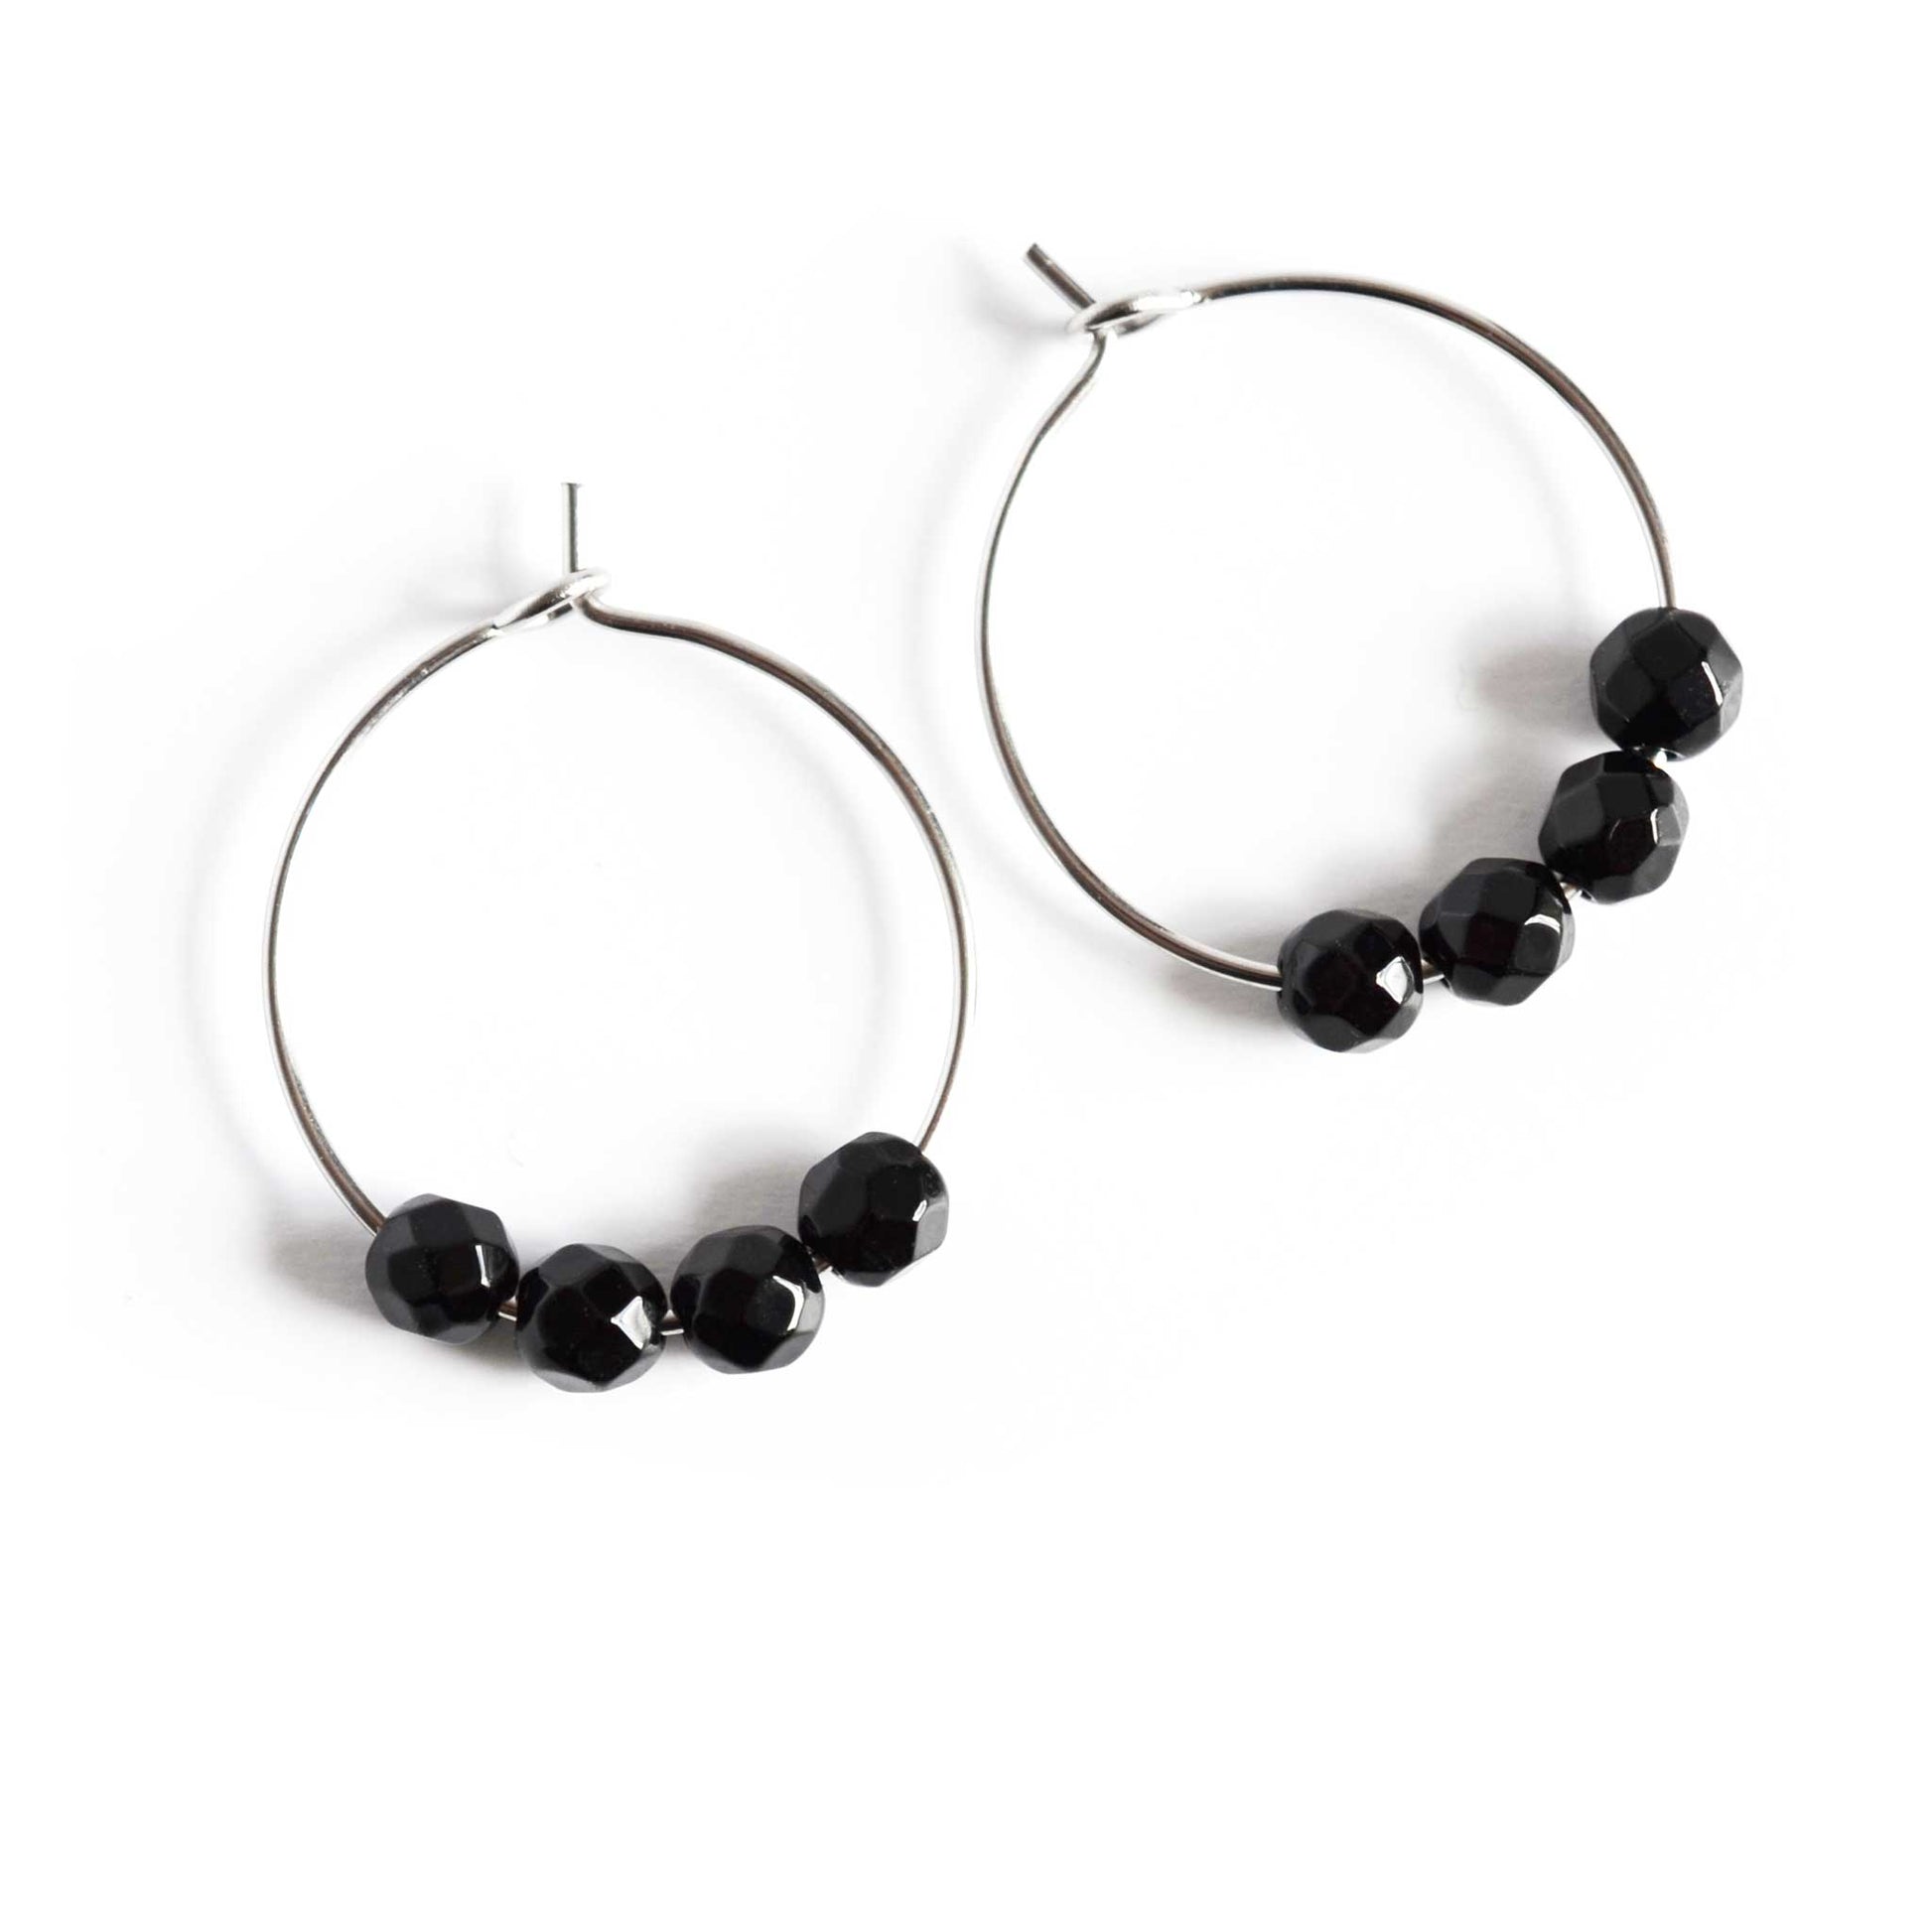 Pair of simple Onyx gemstone black hoop earrings on white background